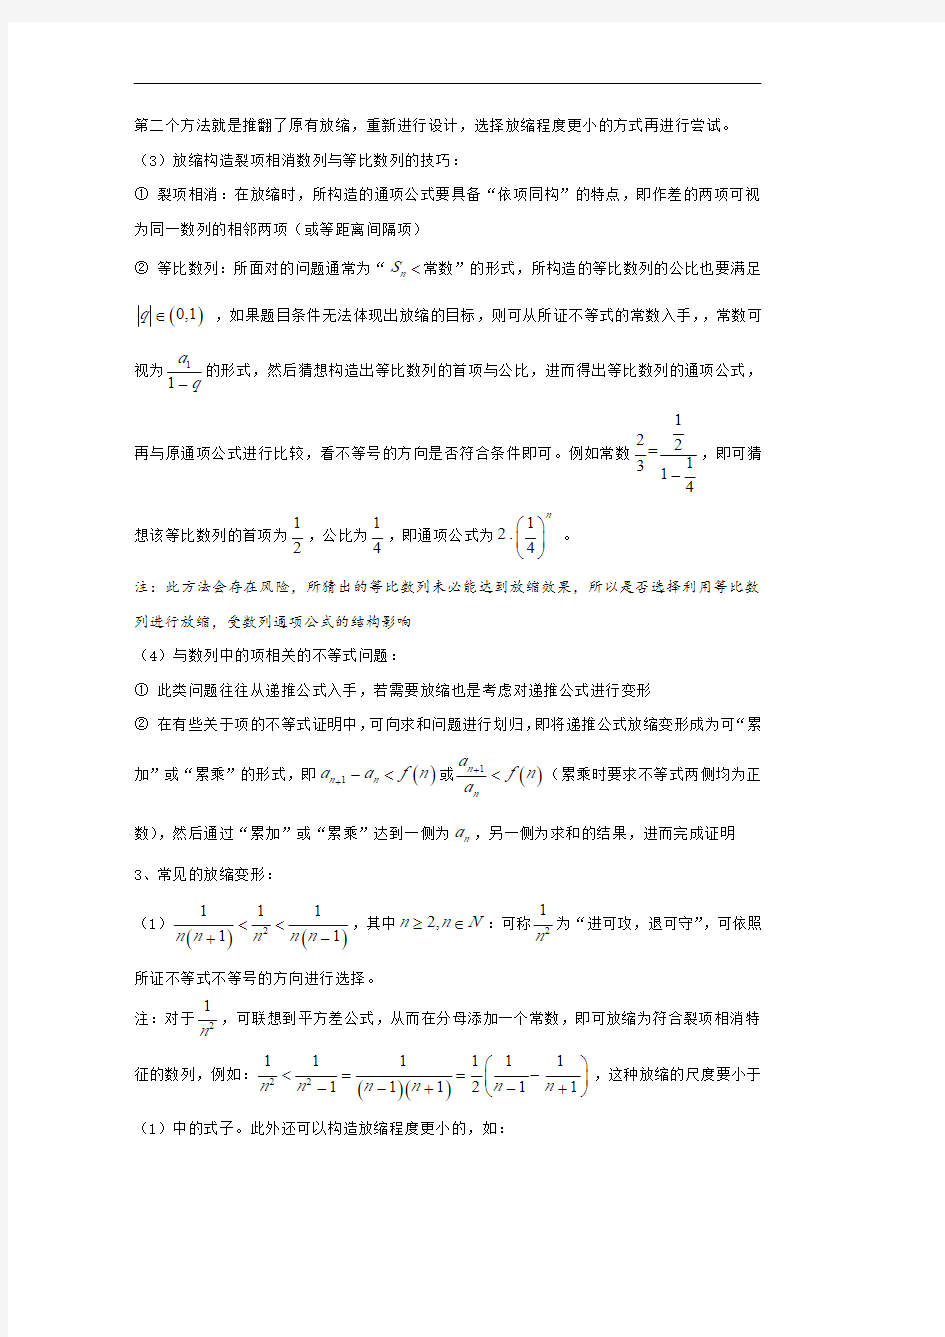 高中数学讲义微专题57  放缩法证明数列不等式